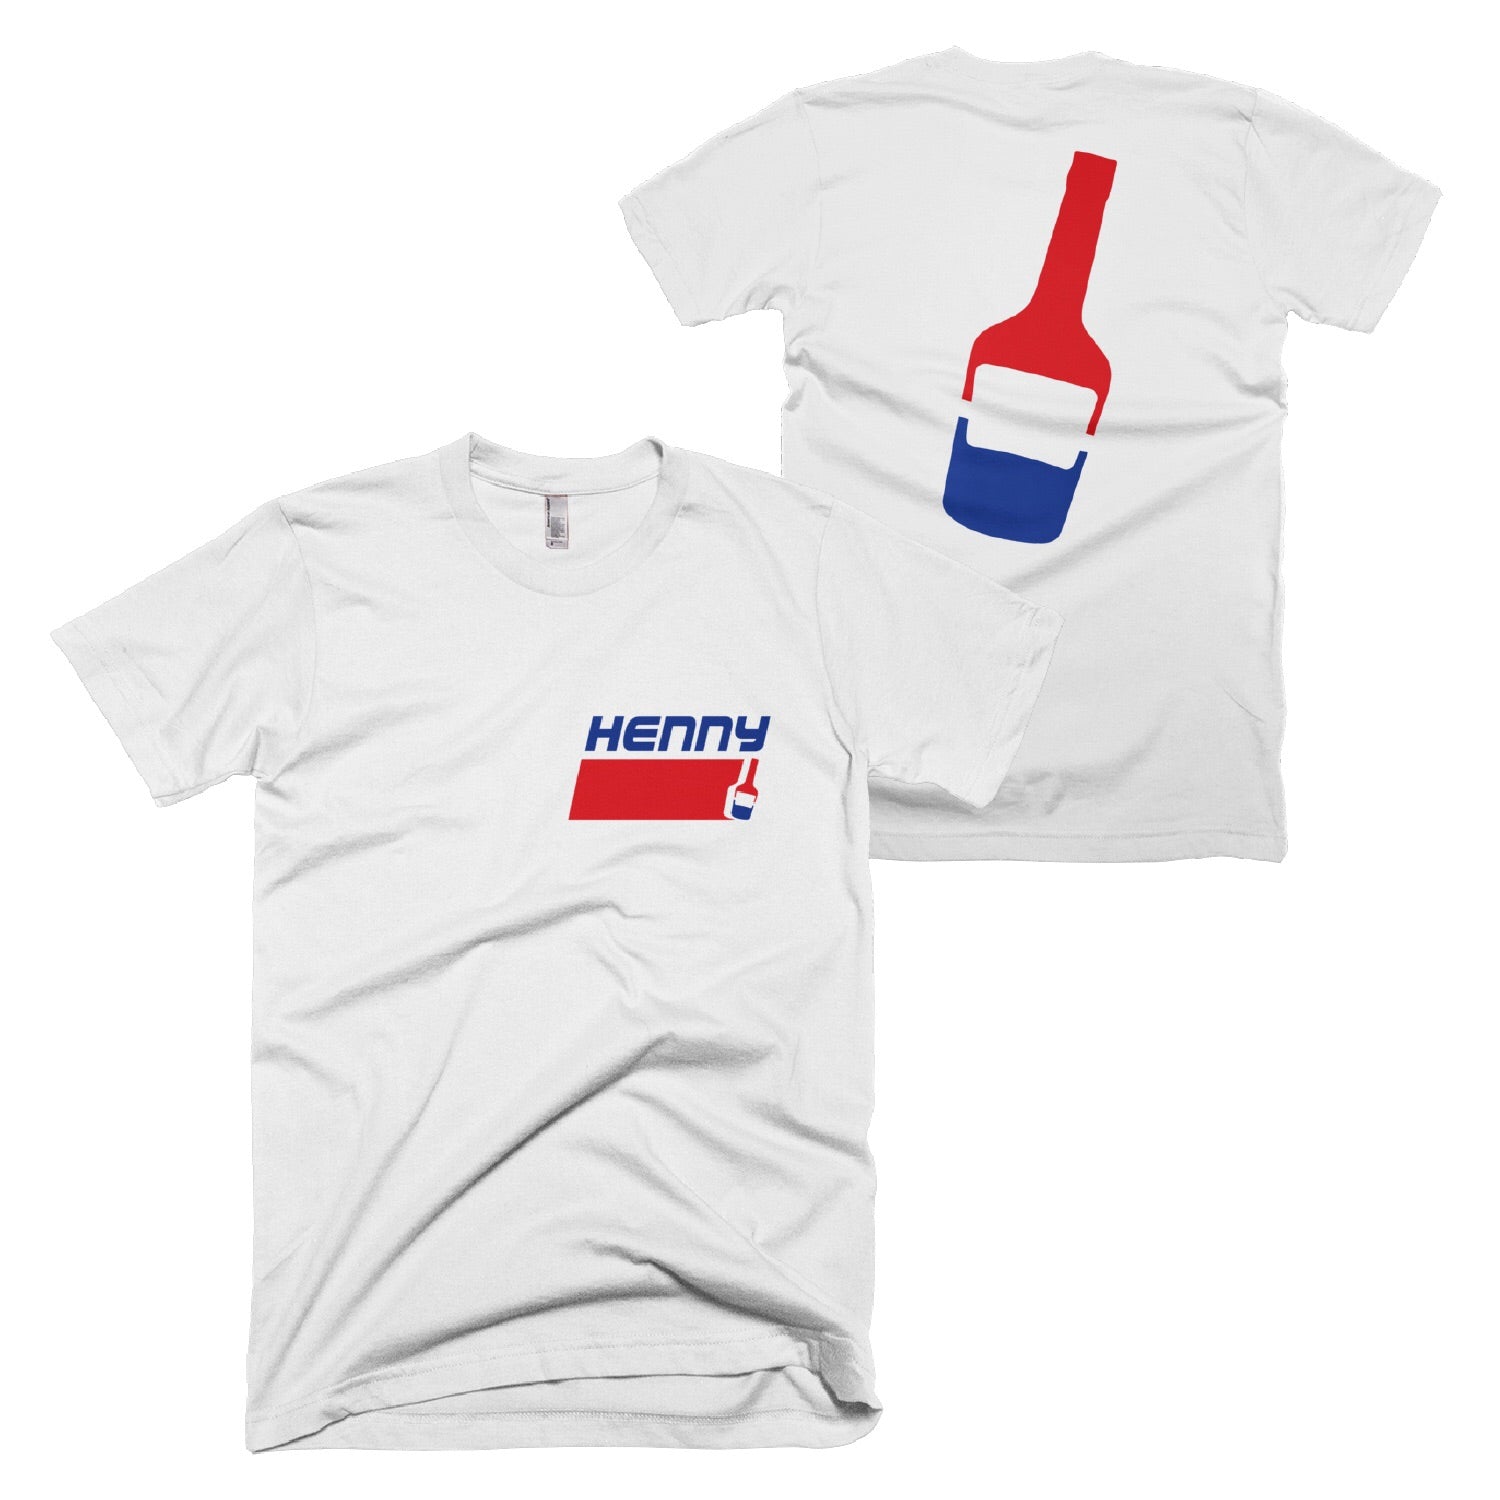 Henny Soda Shirt